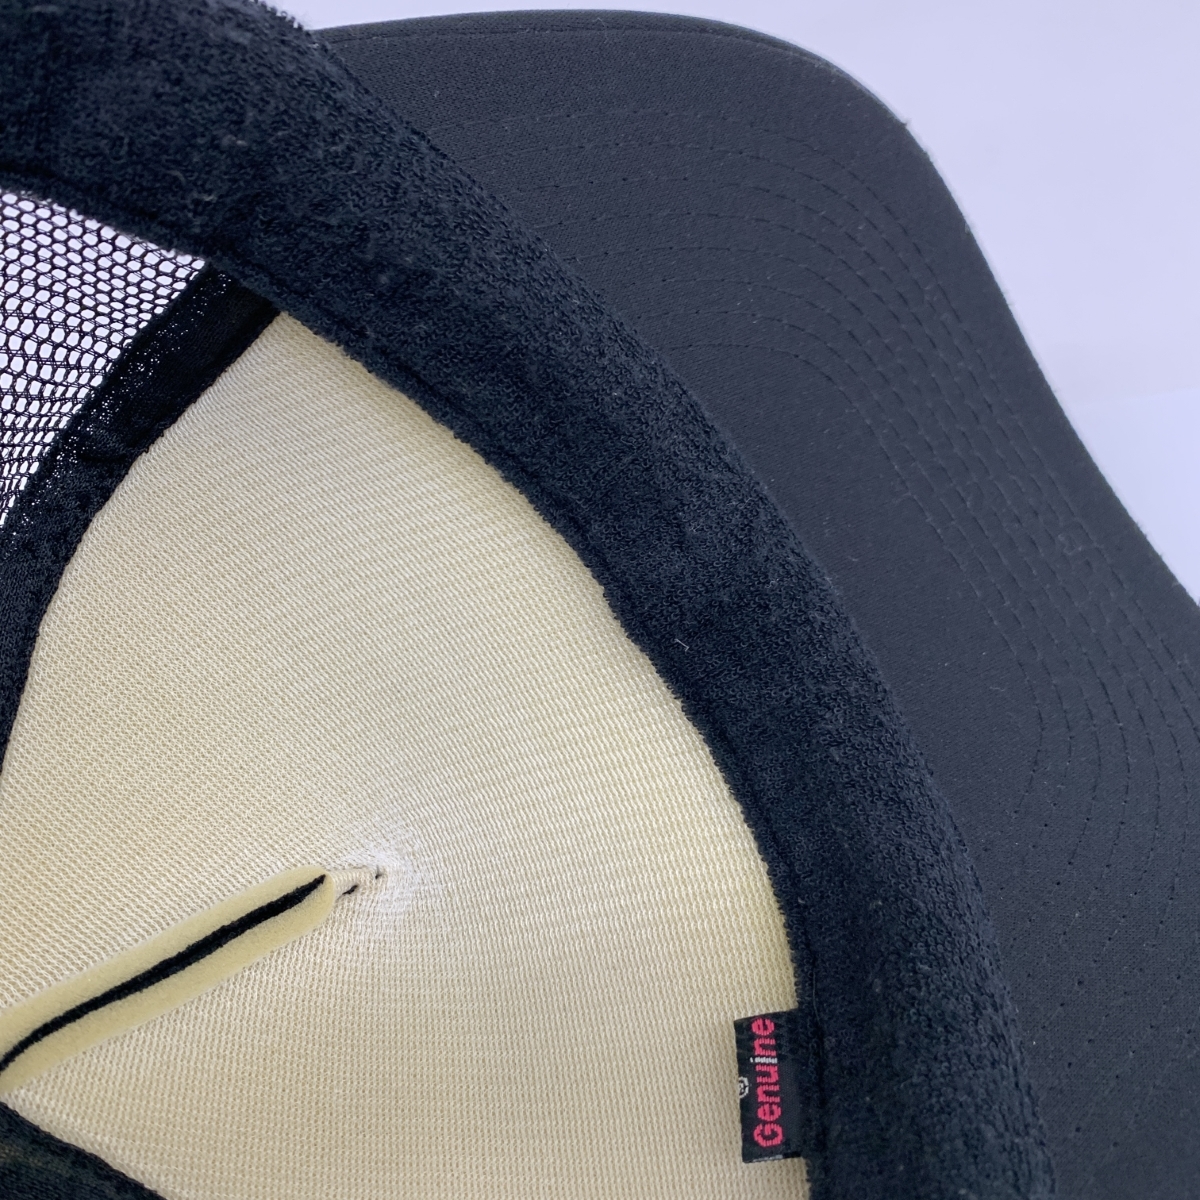 ◆VOLCOM ボルコム キャップ ◆ ブラック ナイロン メッシュ メンズ 帽子 ハット hat 服飾小物_画像6